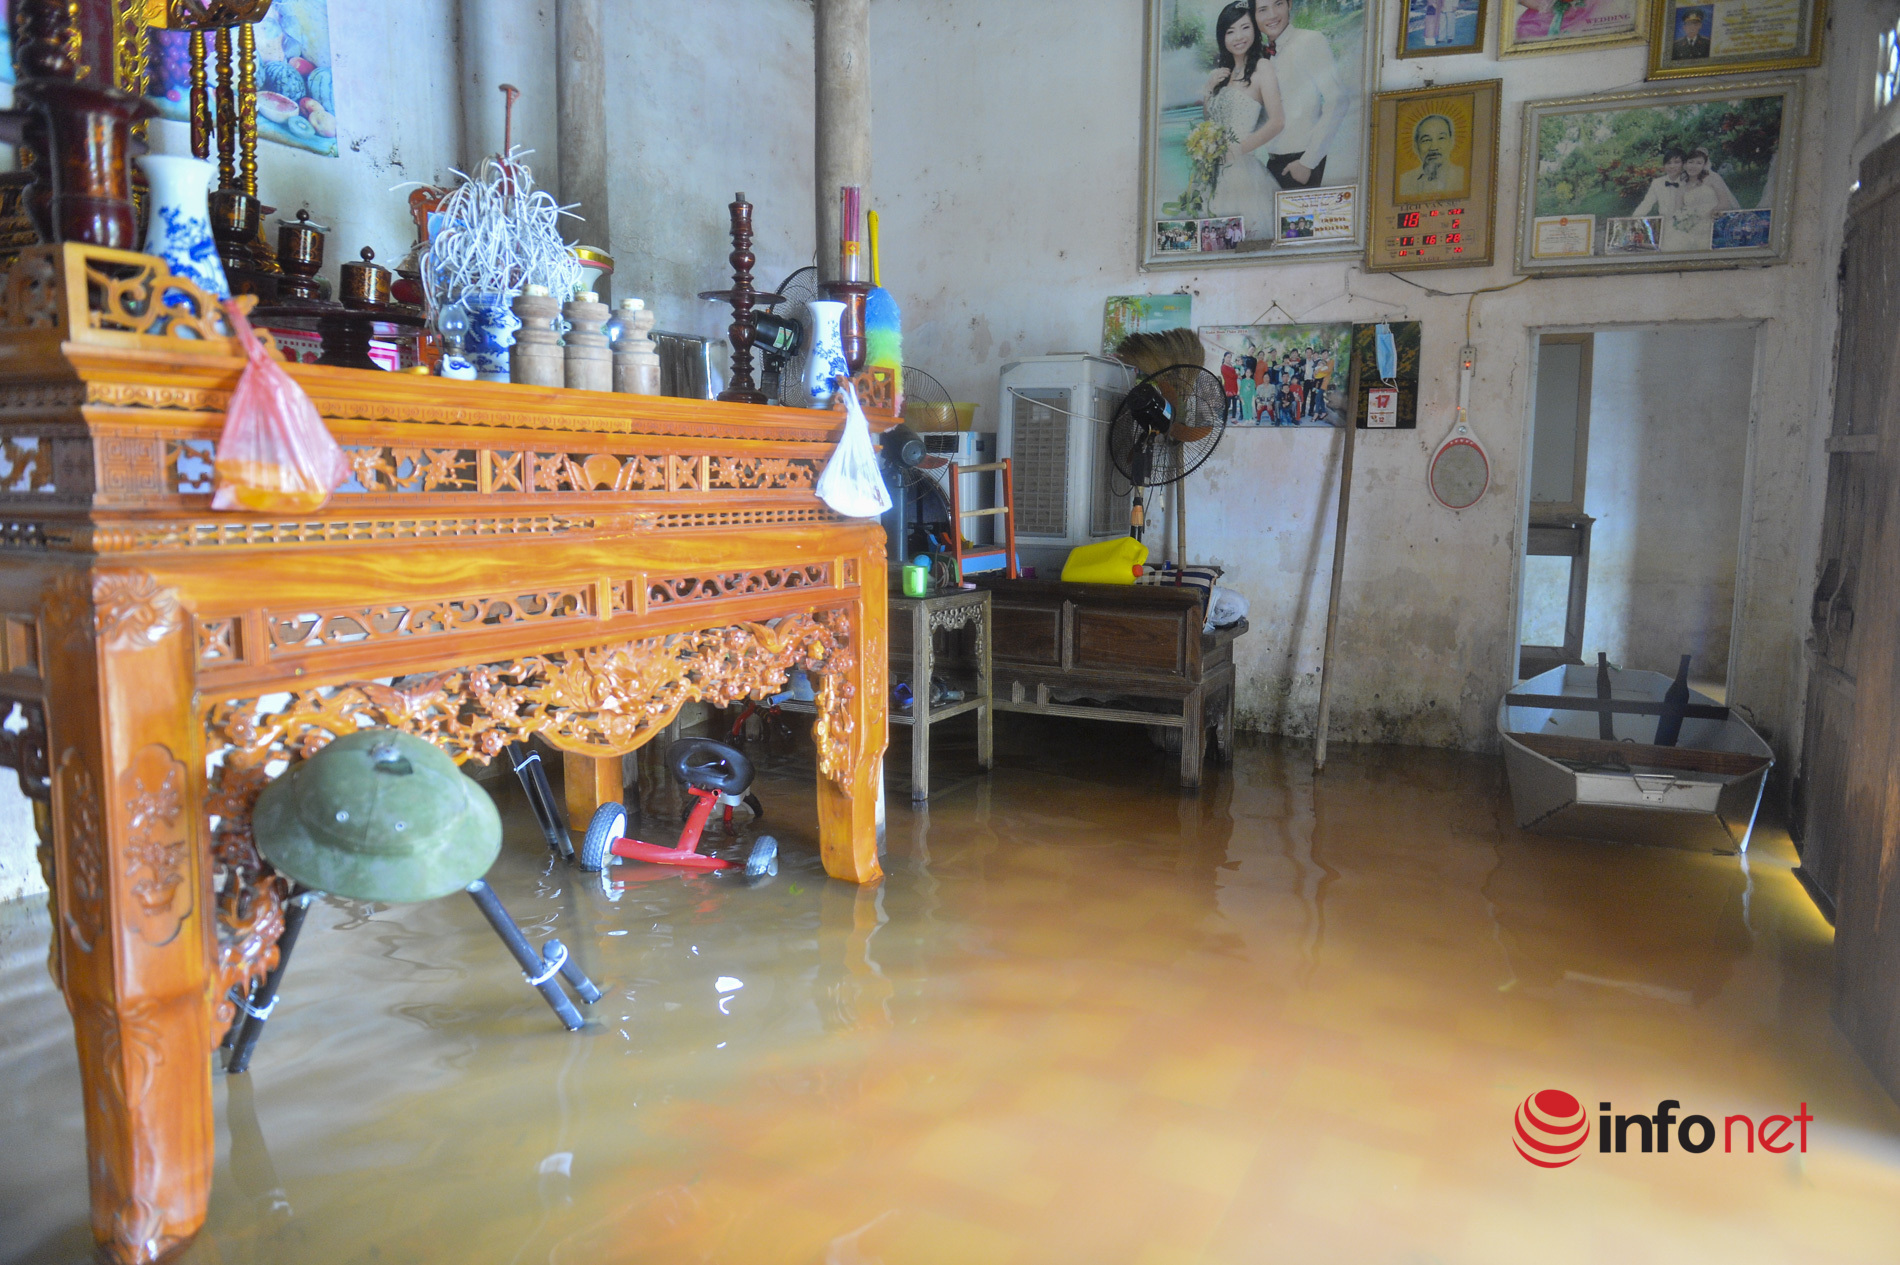 Hà Nội: Nước sông lên cao, hàng trăm hộ dân ở Chương Mỹ bị ngập nặng